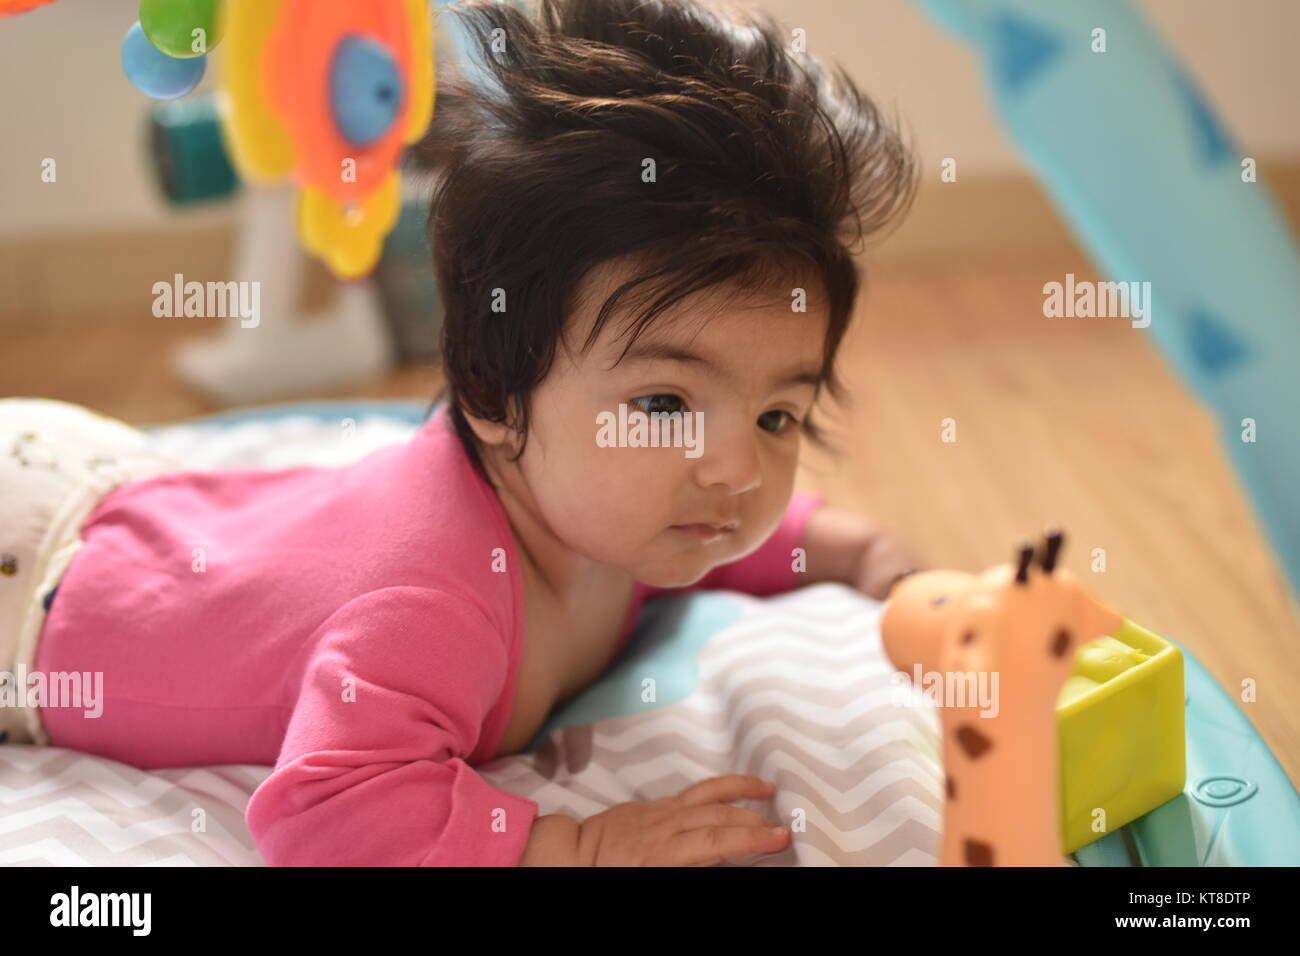 Jolie petite fille aux cheveux longs regards attentivement ses jouets dans ses premières explorations Banque D'Images